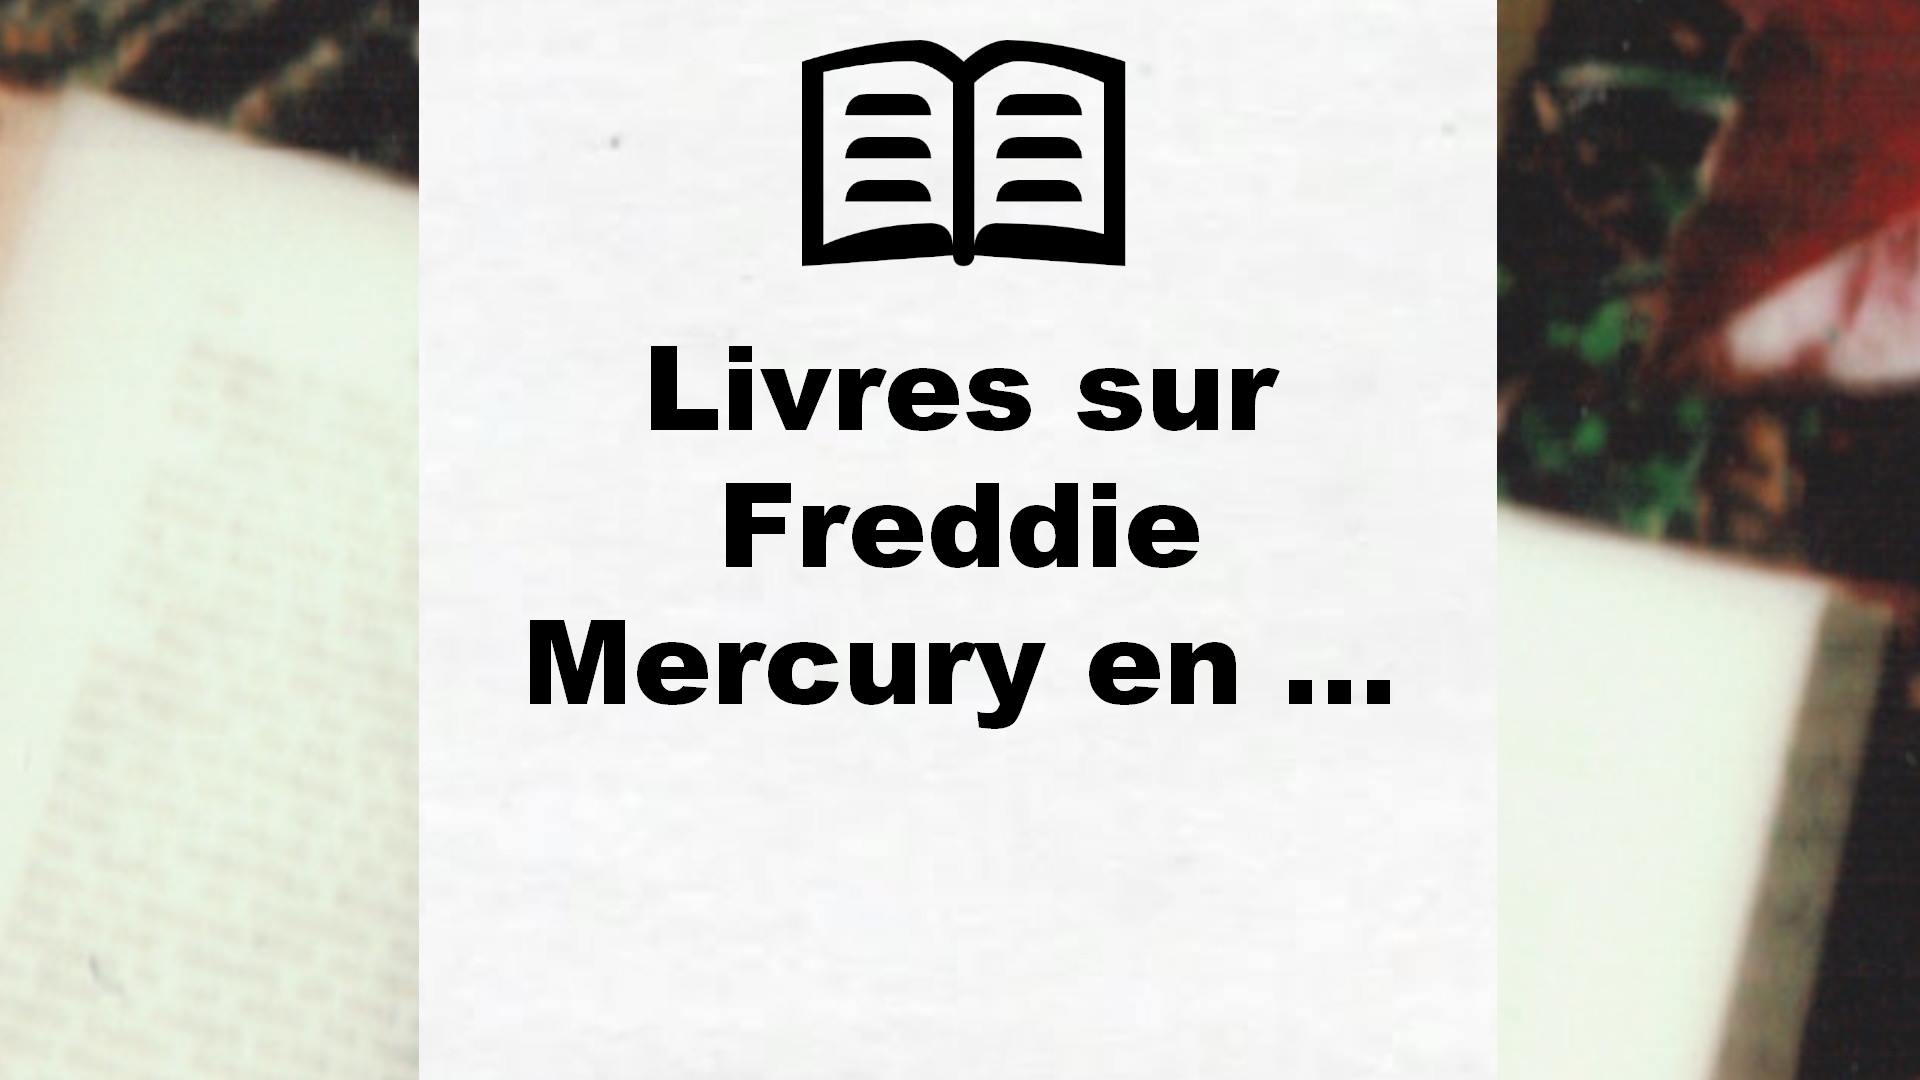 Livres sur Freddie Mercury en francais